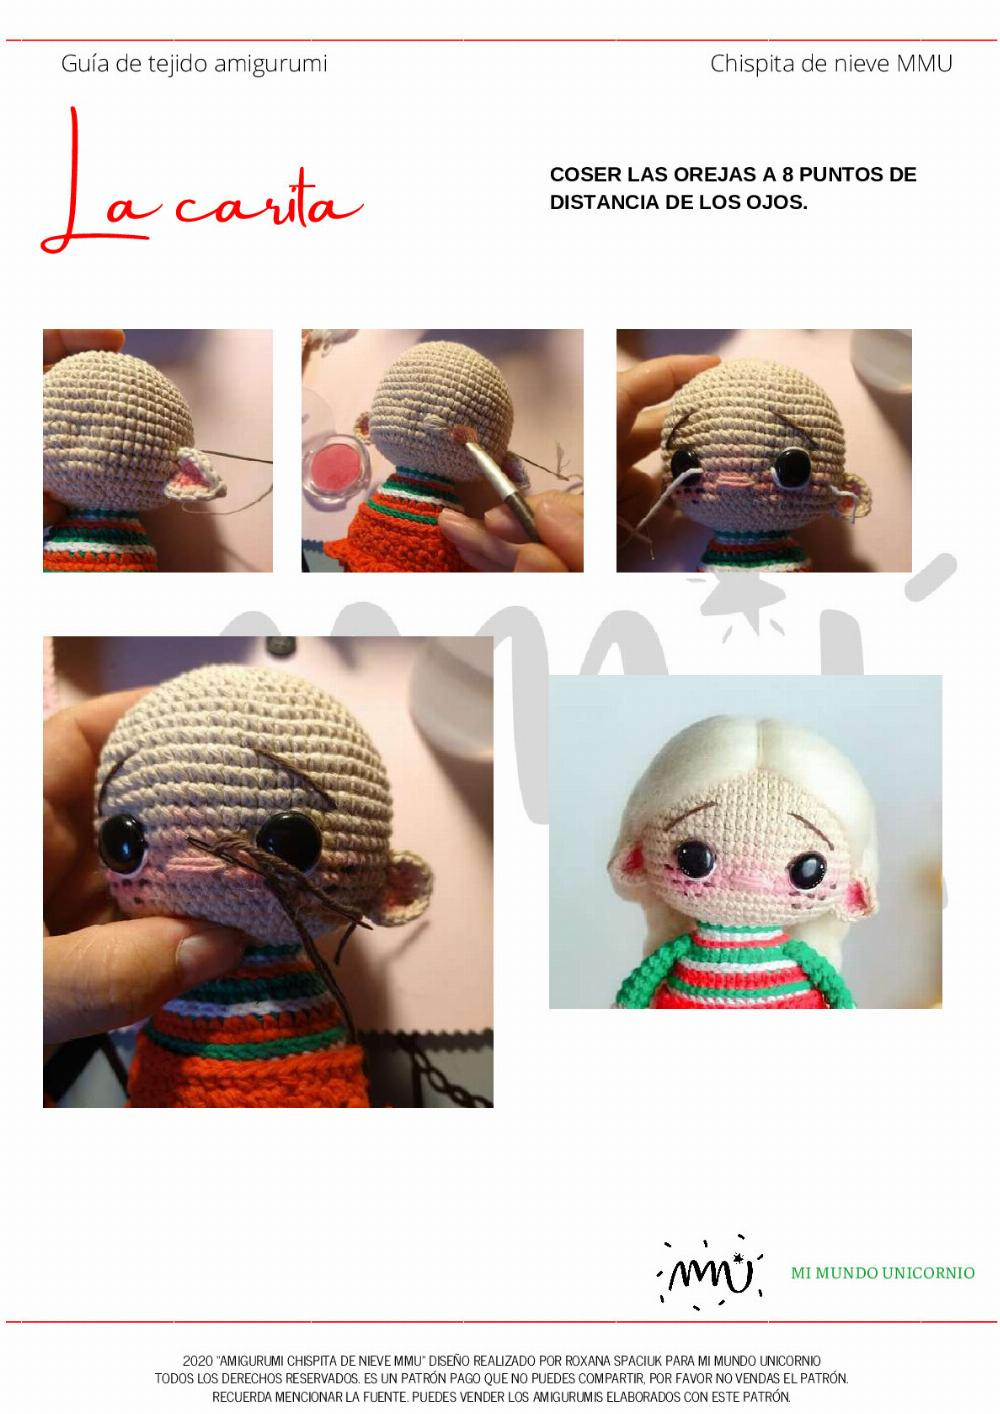 Guía de tejido amigurumi: Muñeca de Navidad